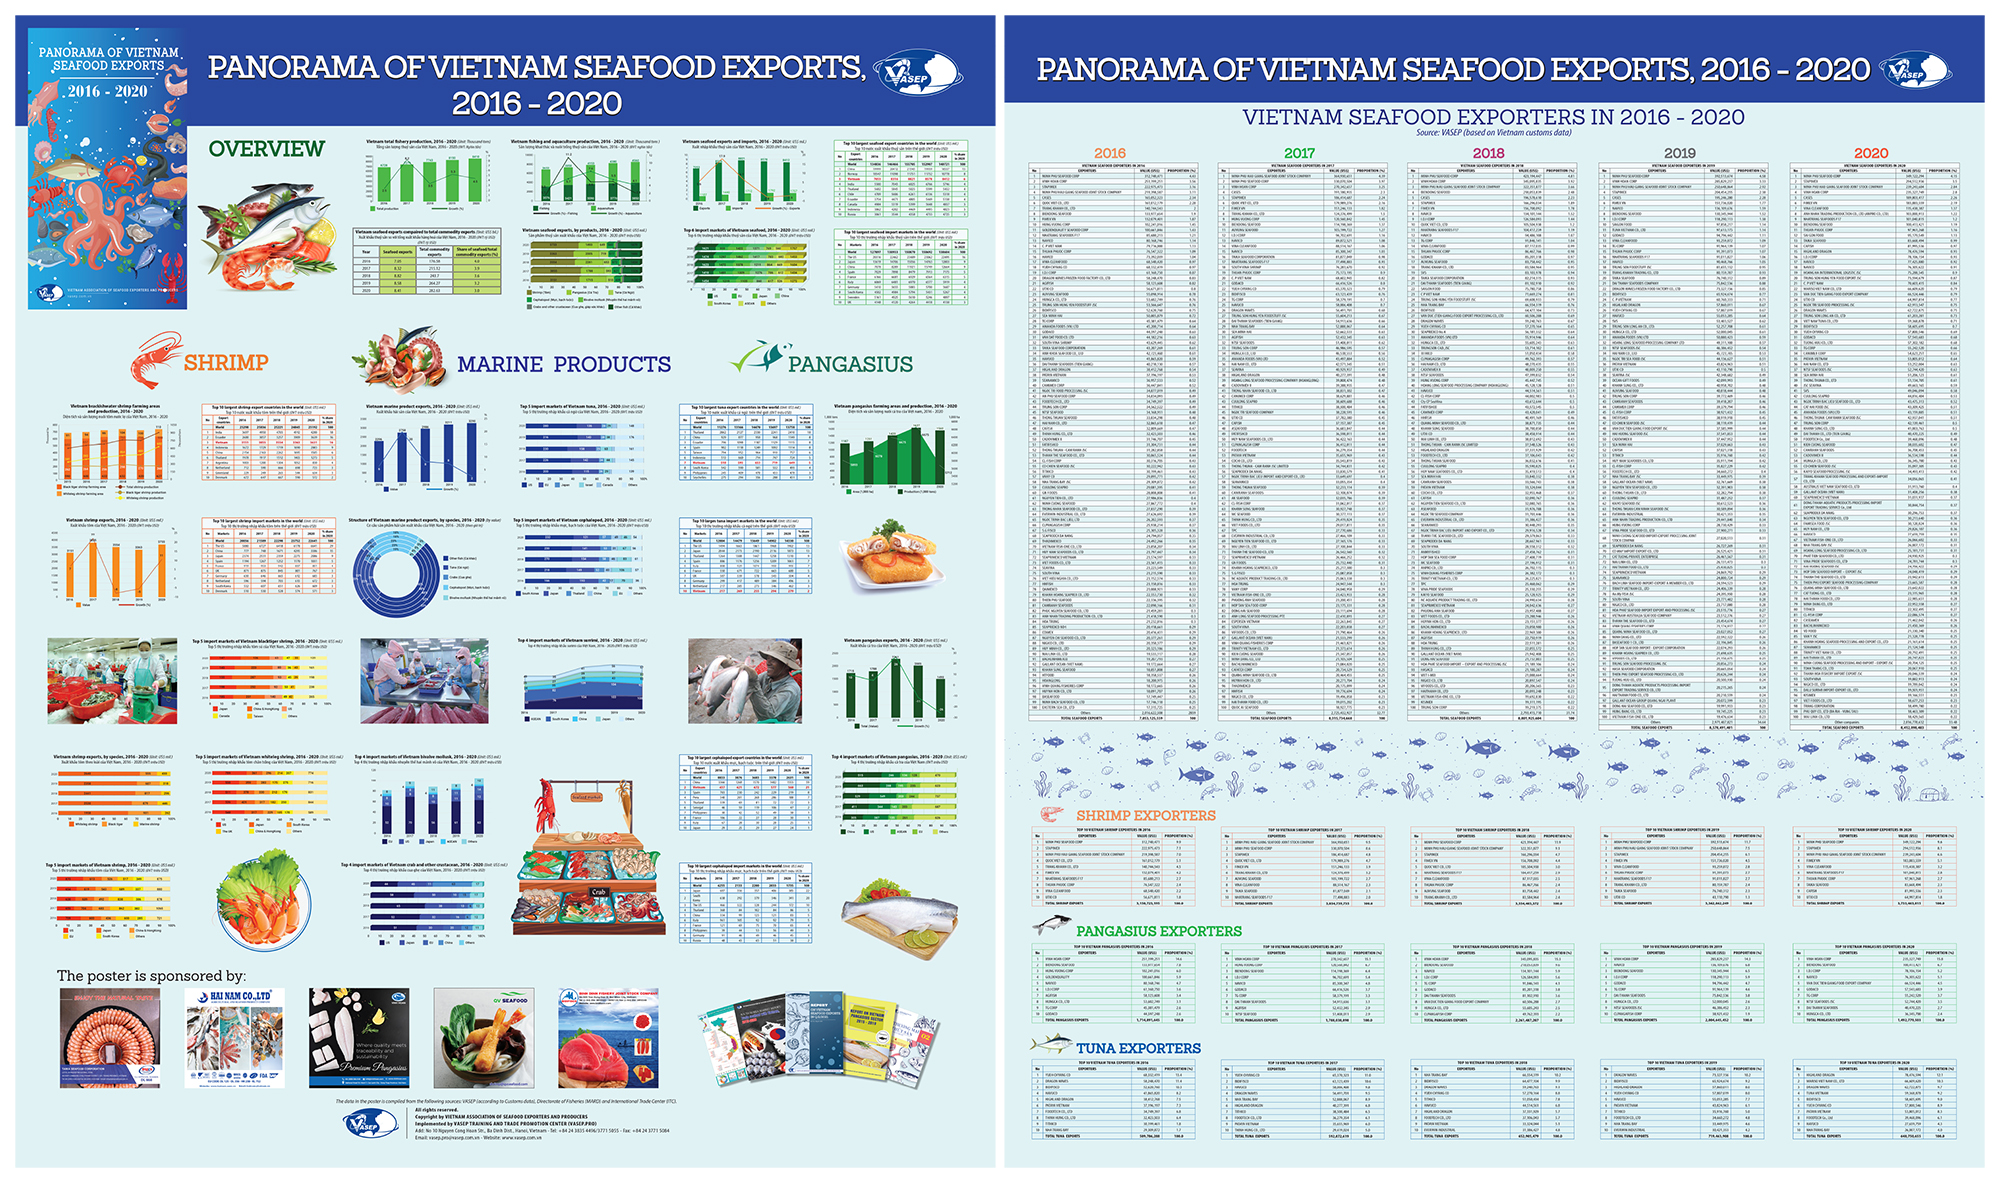 VASEP phát hành Poster “Toàn cảnh xuất khẩu thủy sản Việt Nam 20162020” 